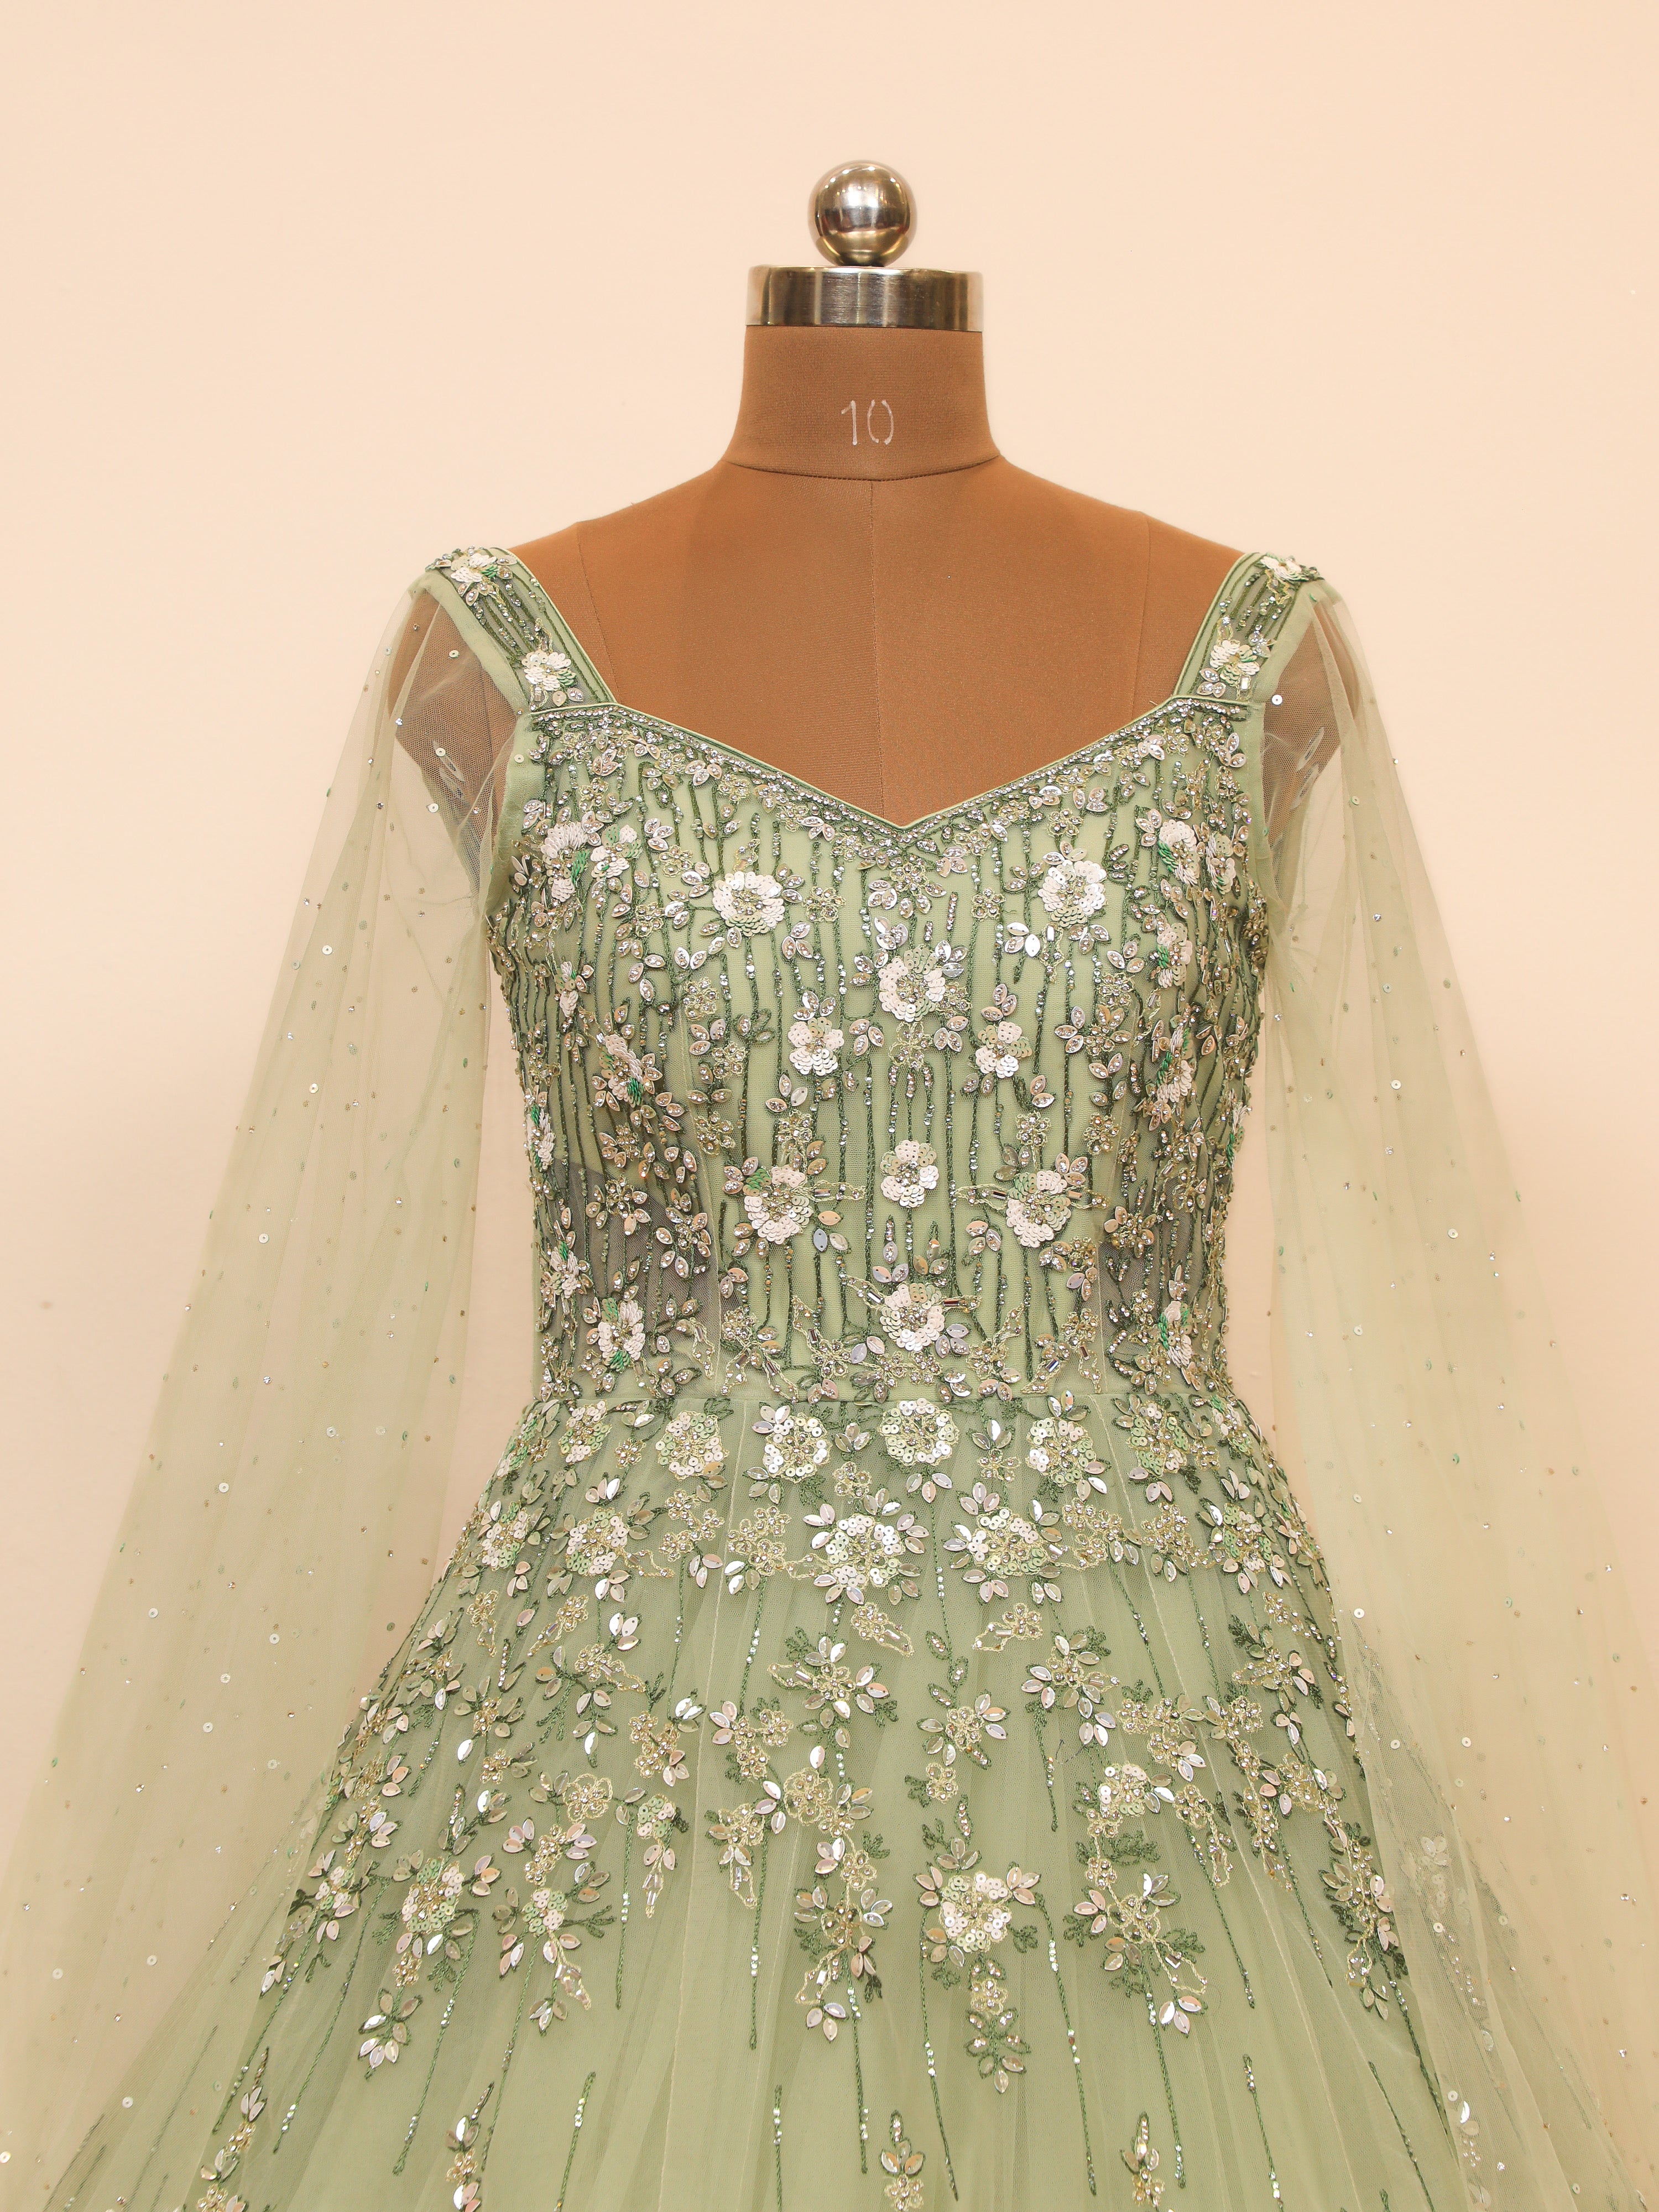 Strapless Green Ball Gown Dress | Gowns, Ball gown wedding dress, Ball gowns